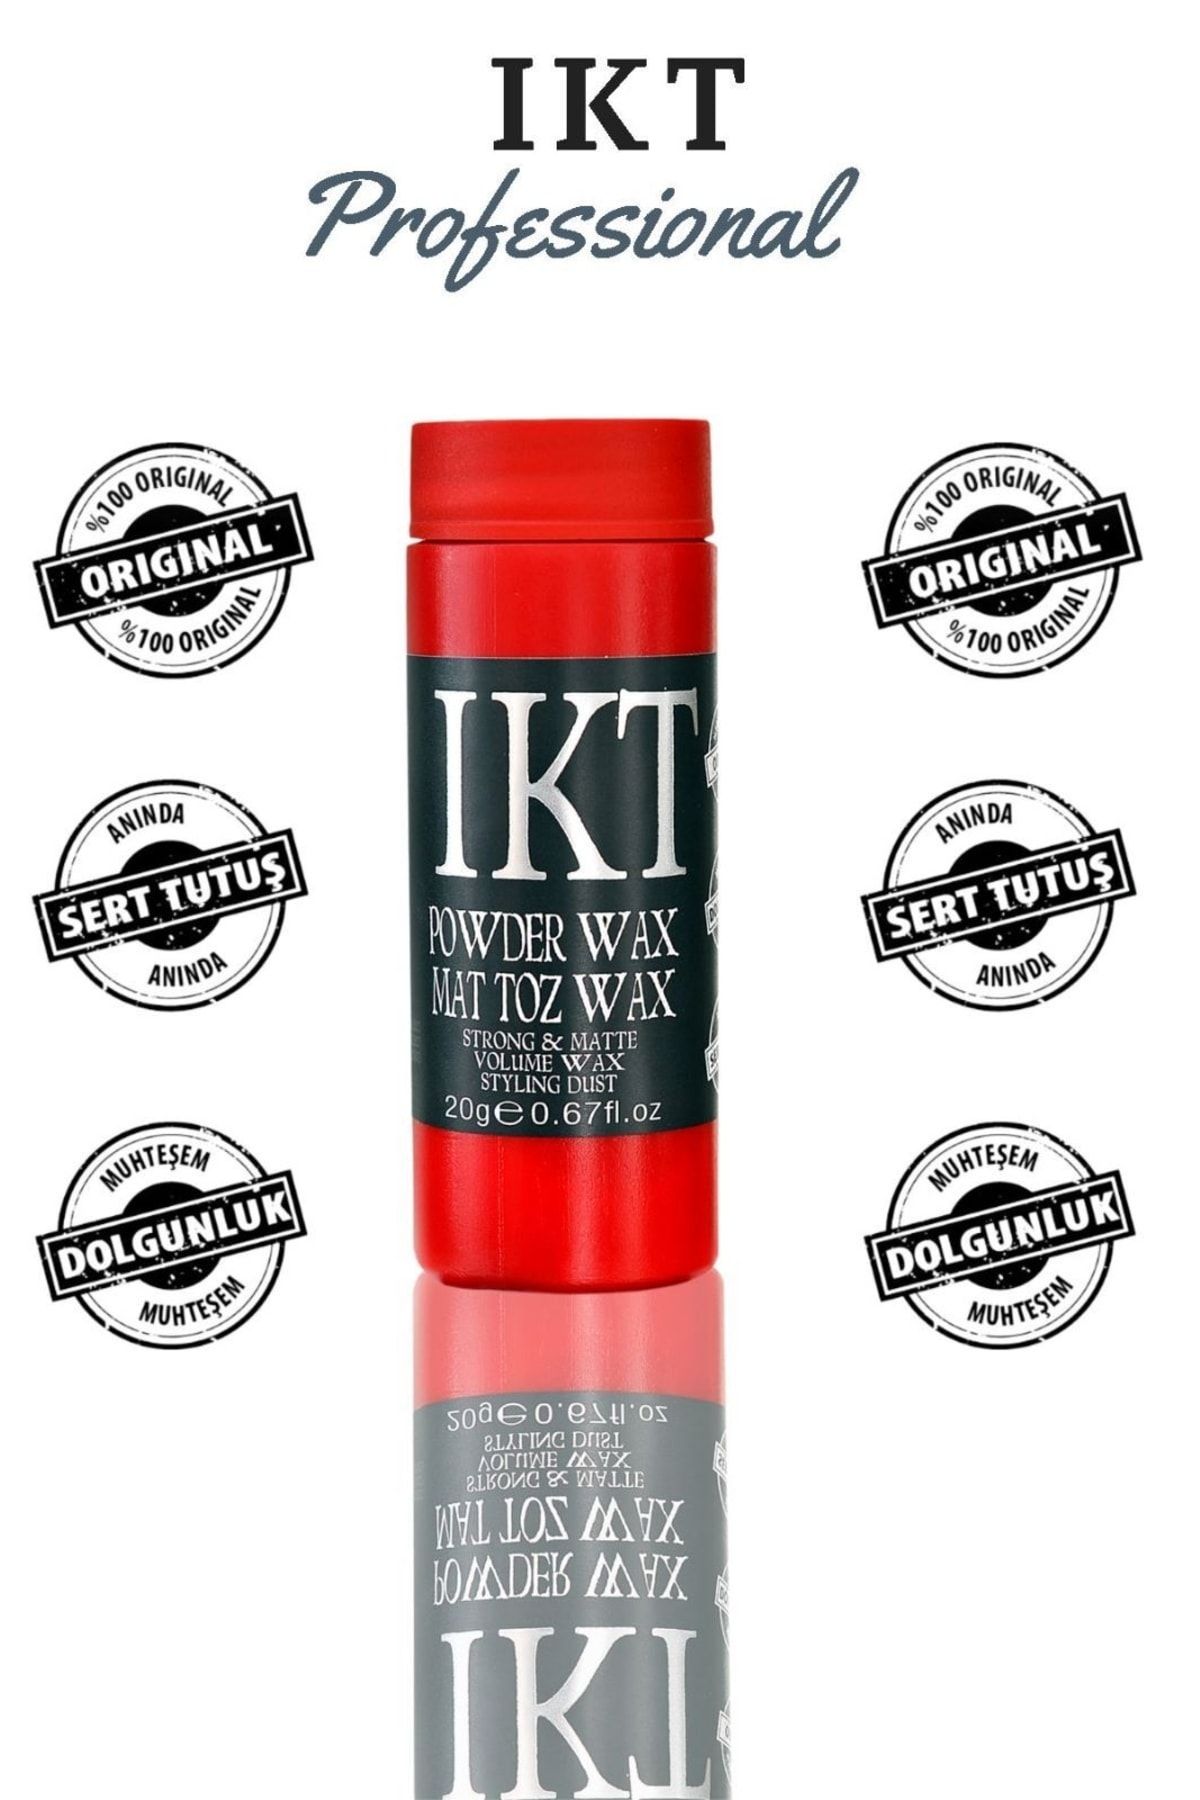 IKT Professional Powder Wax Mat Toz Wax 20g